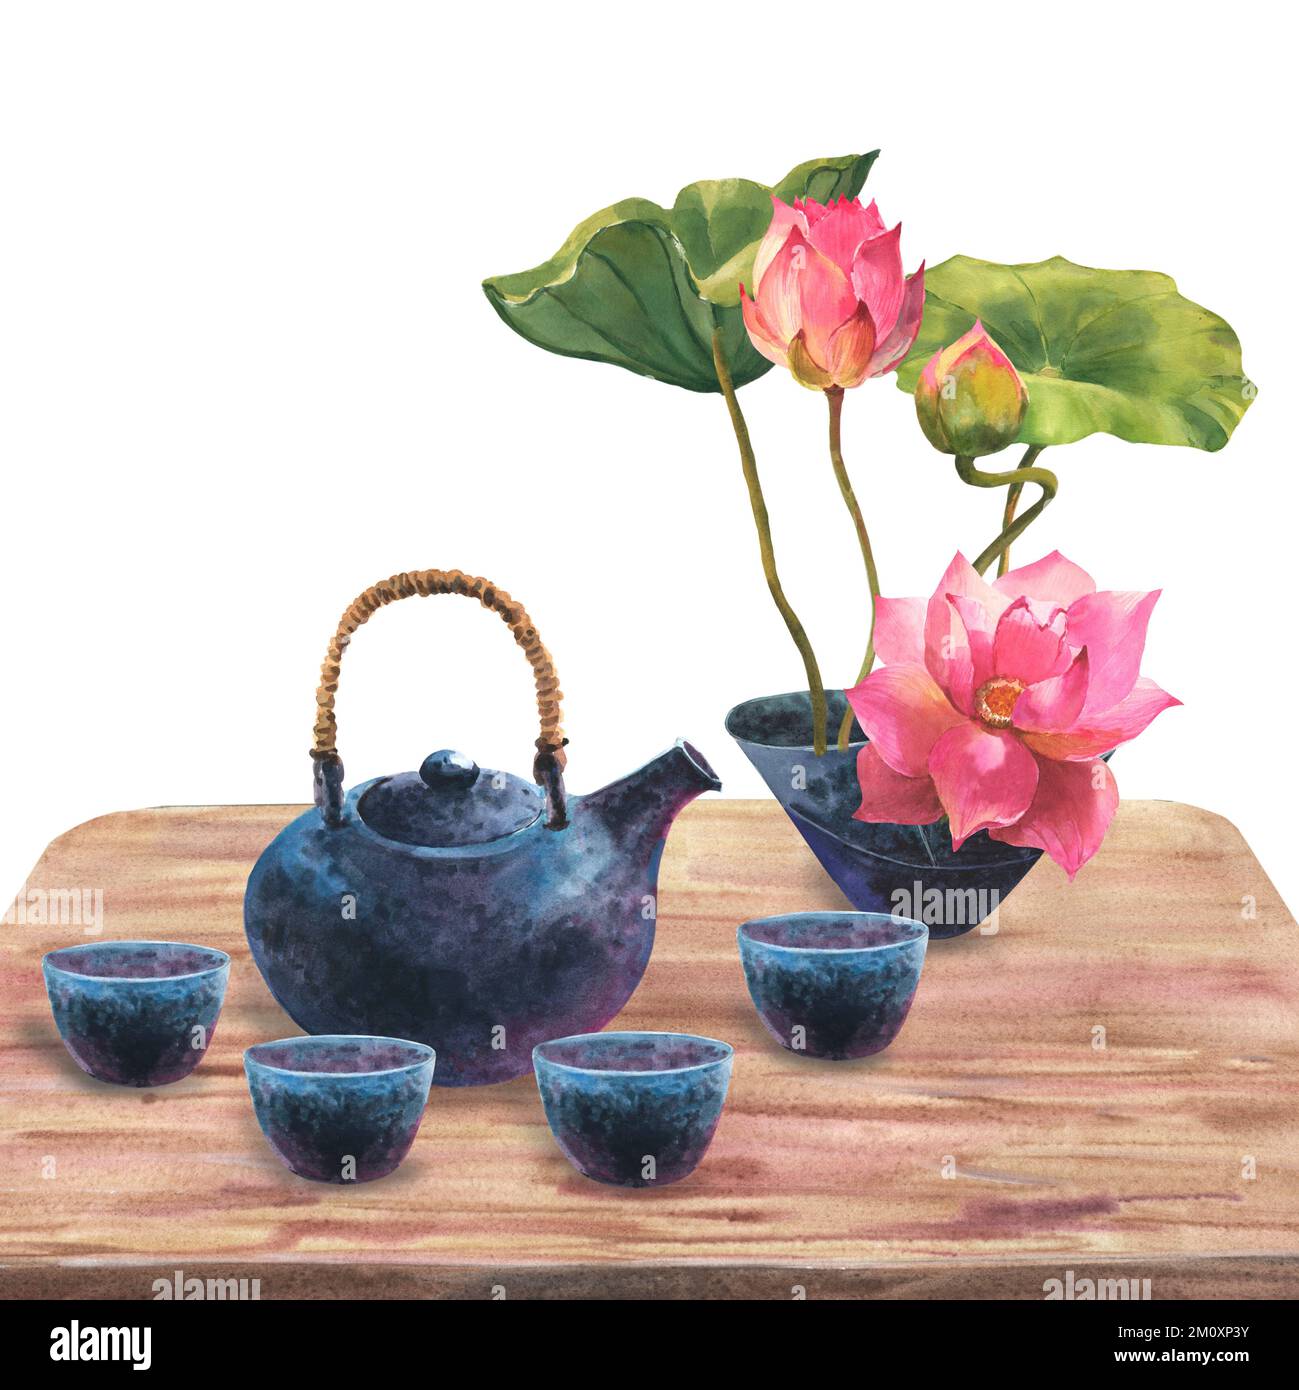 Aquarell-Darstellung der japanischen Teezeremonie, Zusammensetzung einer dunkelblauen Keramikteekanne, Schüsseln Tee, Keramikvase mit blühenden Laken auf einer Holzlasche Stockfoto